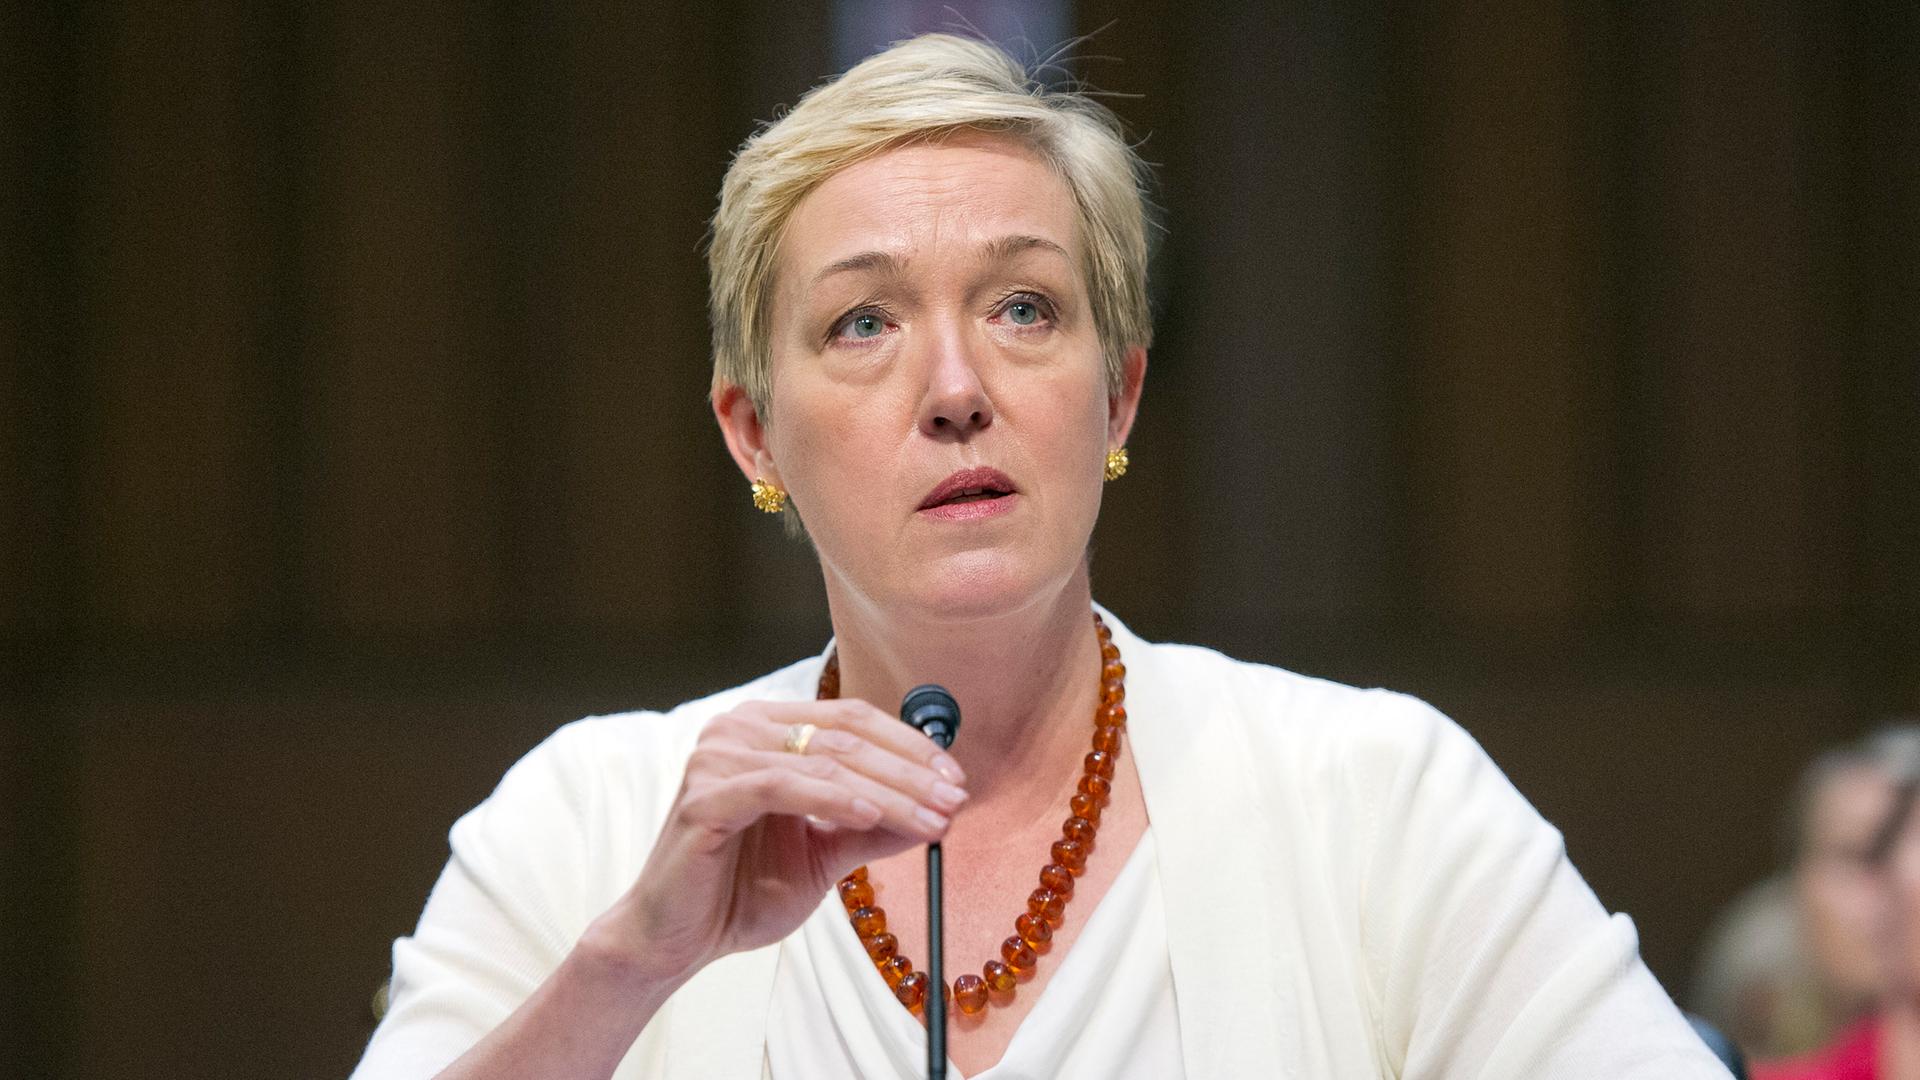 Die Sicherheitspolitikexpertin Constanze Stelzenmüller bei einer Befragung durch den US-Senat. Sie trägt ein helles Oberteil und eine bernsteinfarbene Kette.